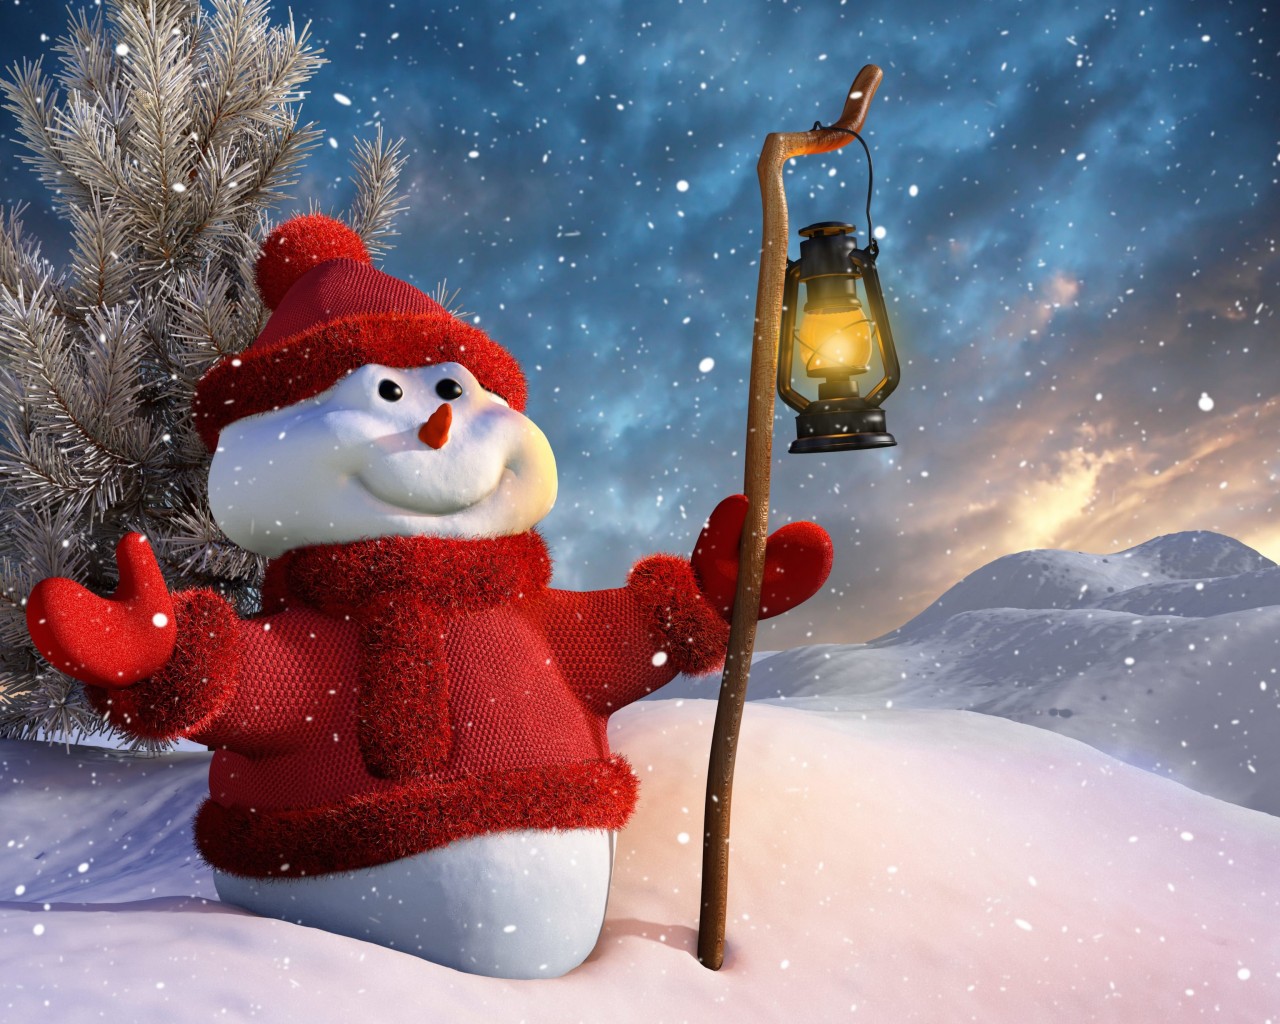 Christmas Snowman Wallpaper for Desktop 1280x1024